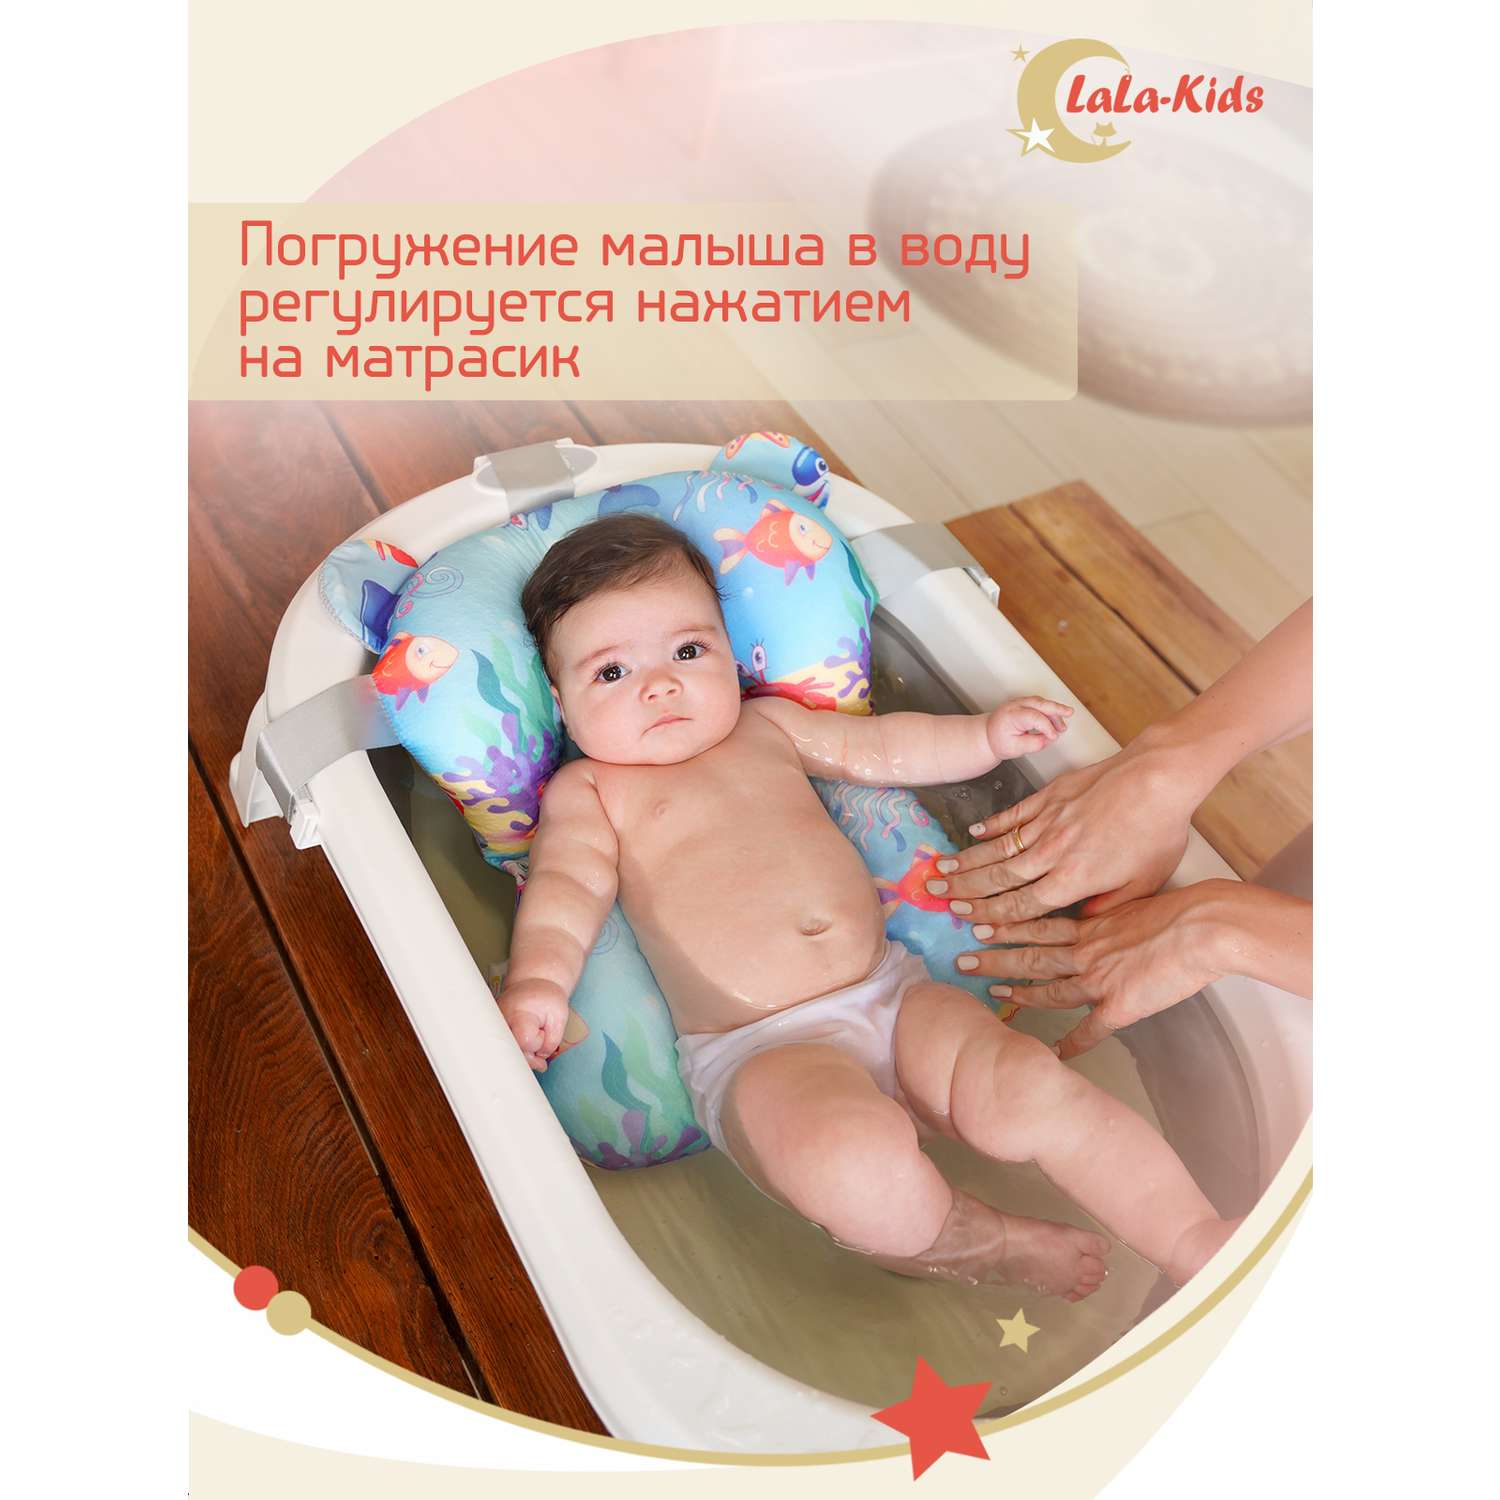 Детская ванночка LaLa-Kids складная для купания новорожденных с термометром и матрасиком в комплекте - фото 18